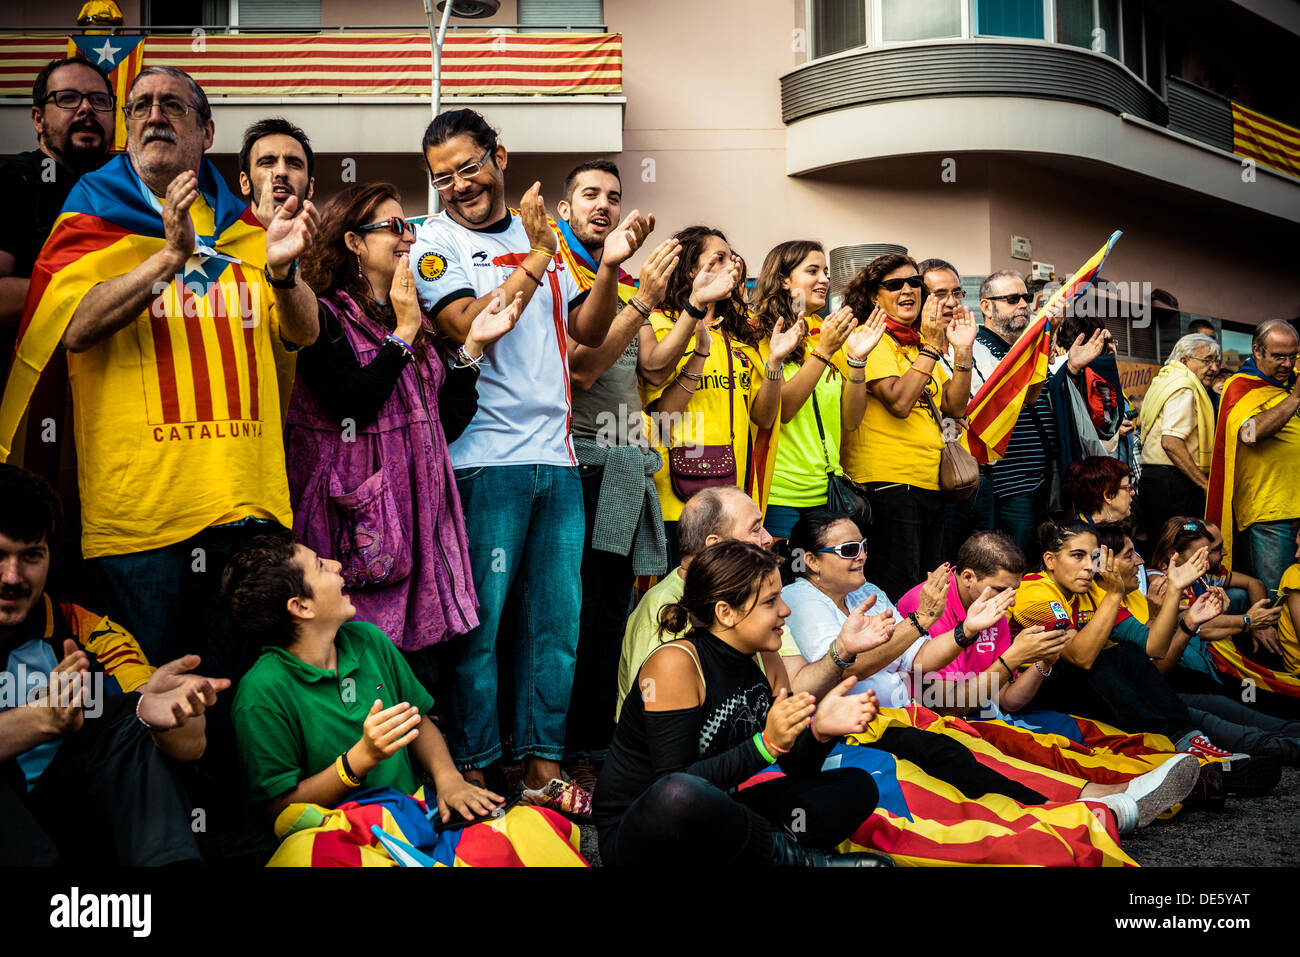 Barcelona, Spanien. 11. September 2013: Demonstranten applaudieren vor Barcelonas Sagrada Familia während der "Via Catalana" am Nationalfeiertag Kataloniens © Matthi/Alamy Live-Nachrichten Stockfoto